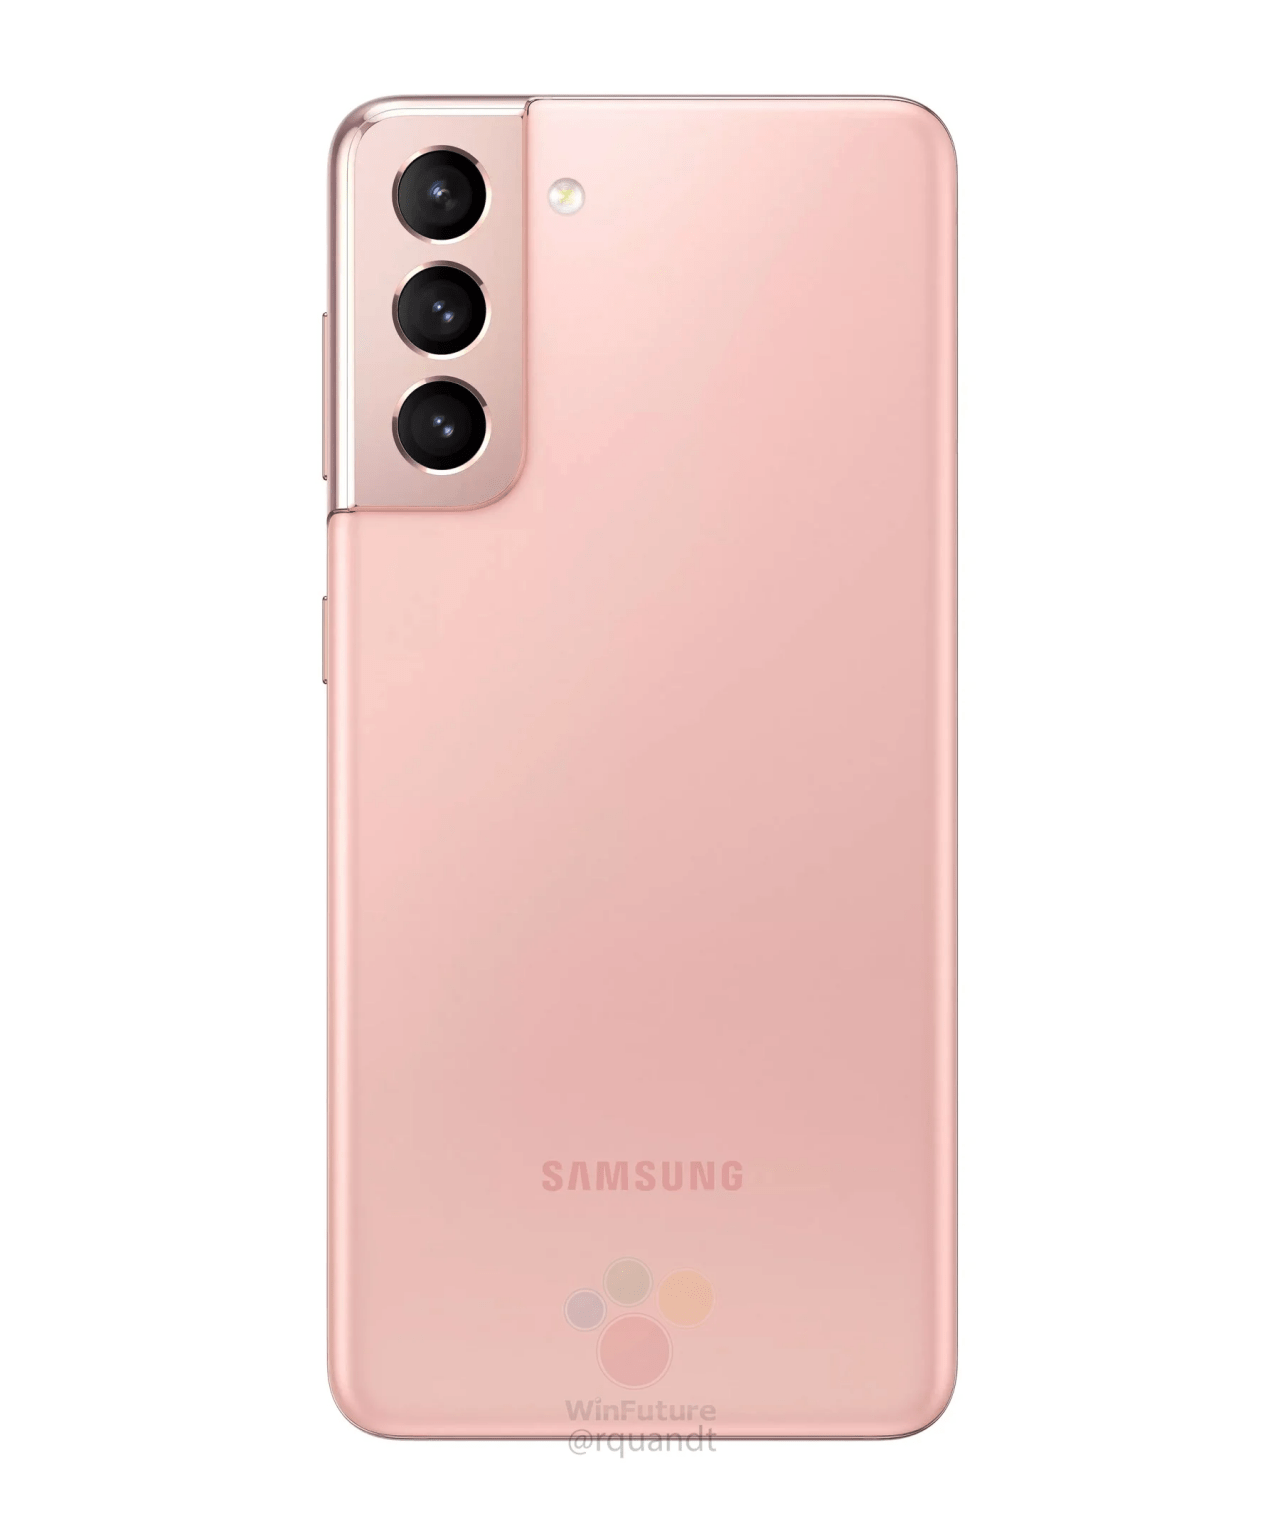 Samsung Galaxy S21 và S21 Plus được tiết lộ thông số kỹ thuật và thiết kế